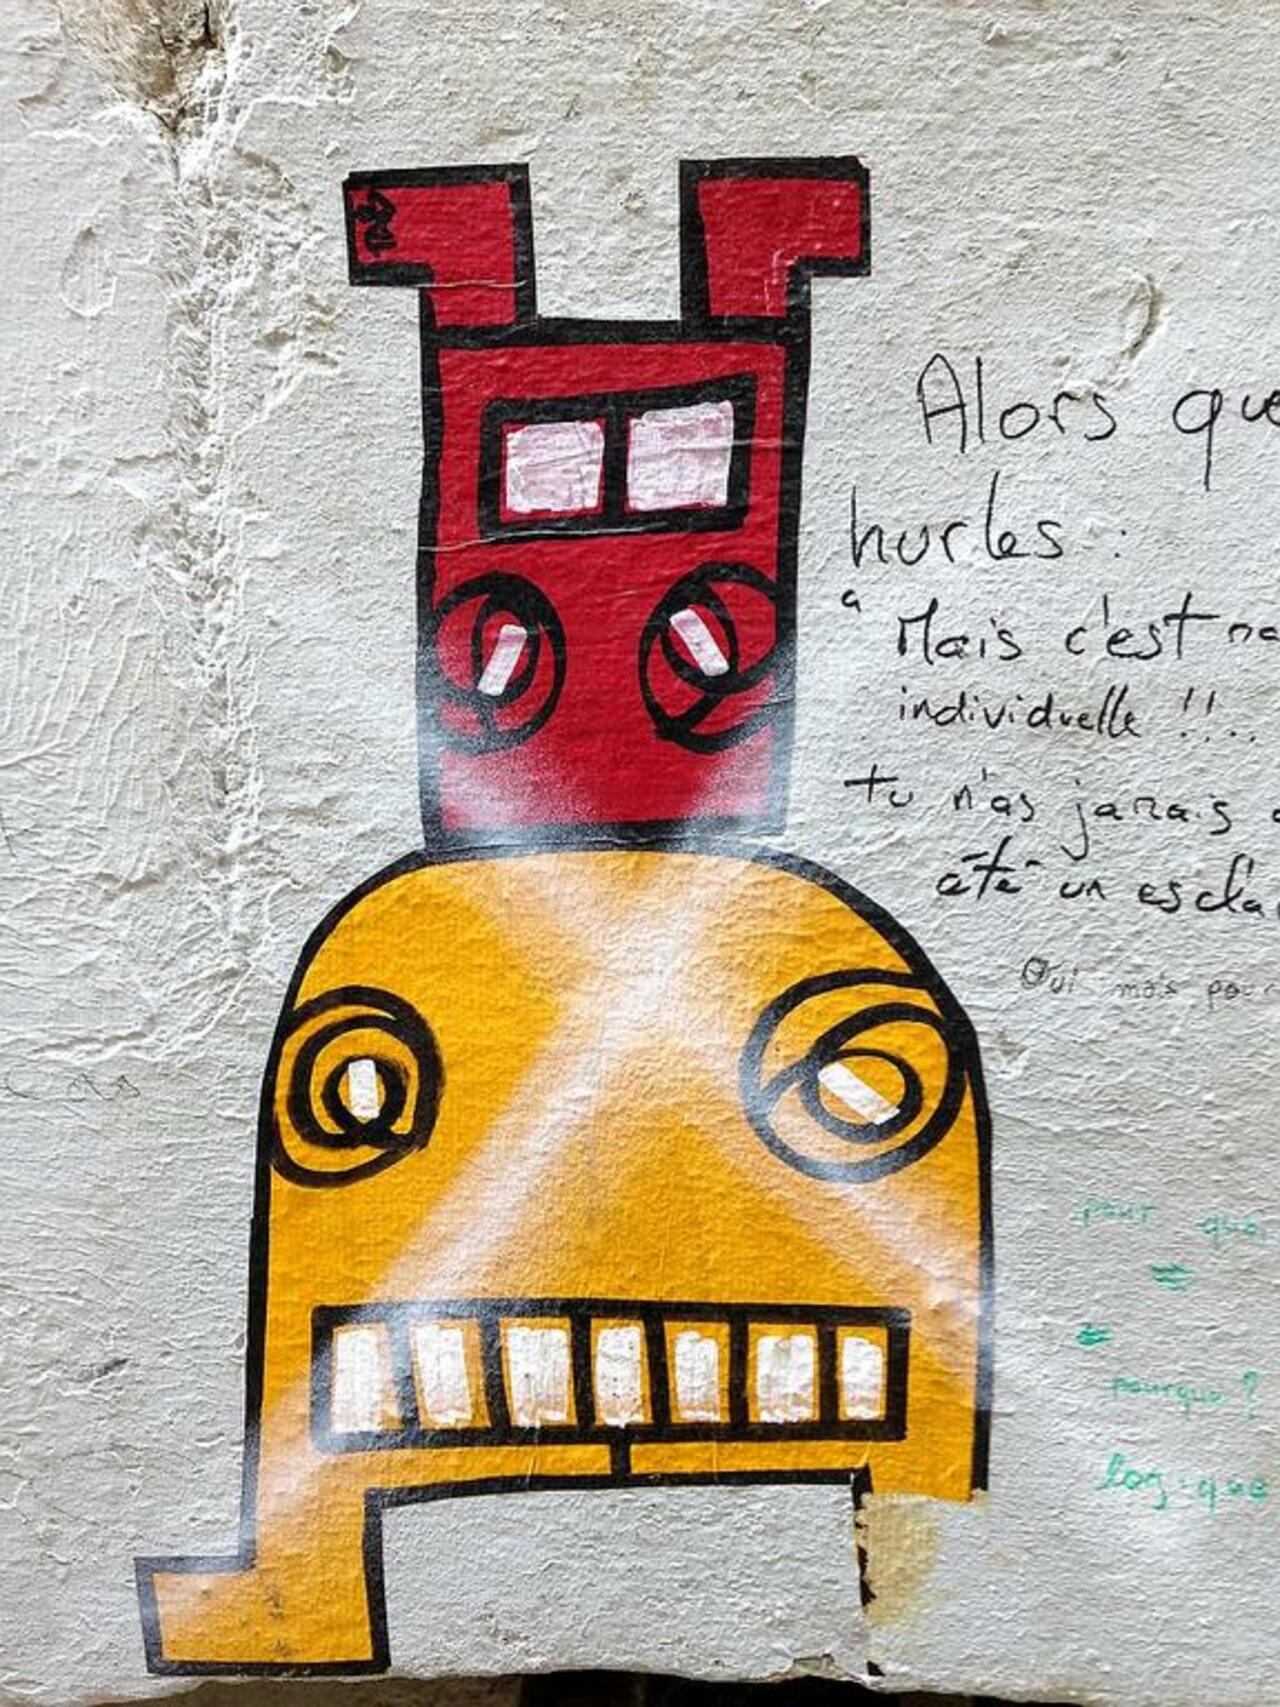 Street Art by tabtab in #Bordeaux http://www.urbacolors.com #art #mural #graffiti #streetart https://t.co/5a8fbDfZC1